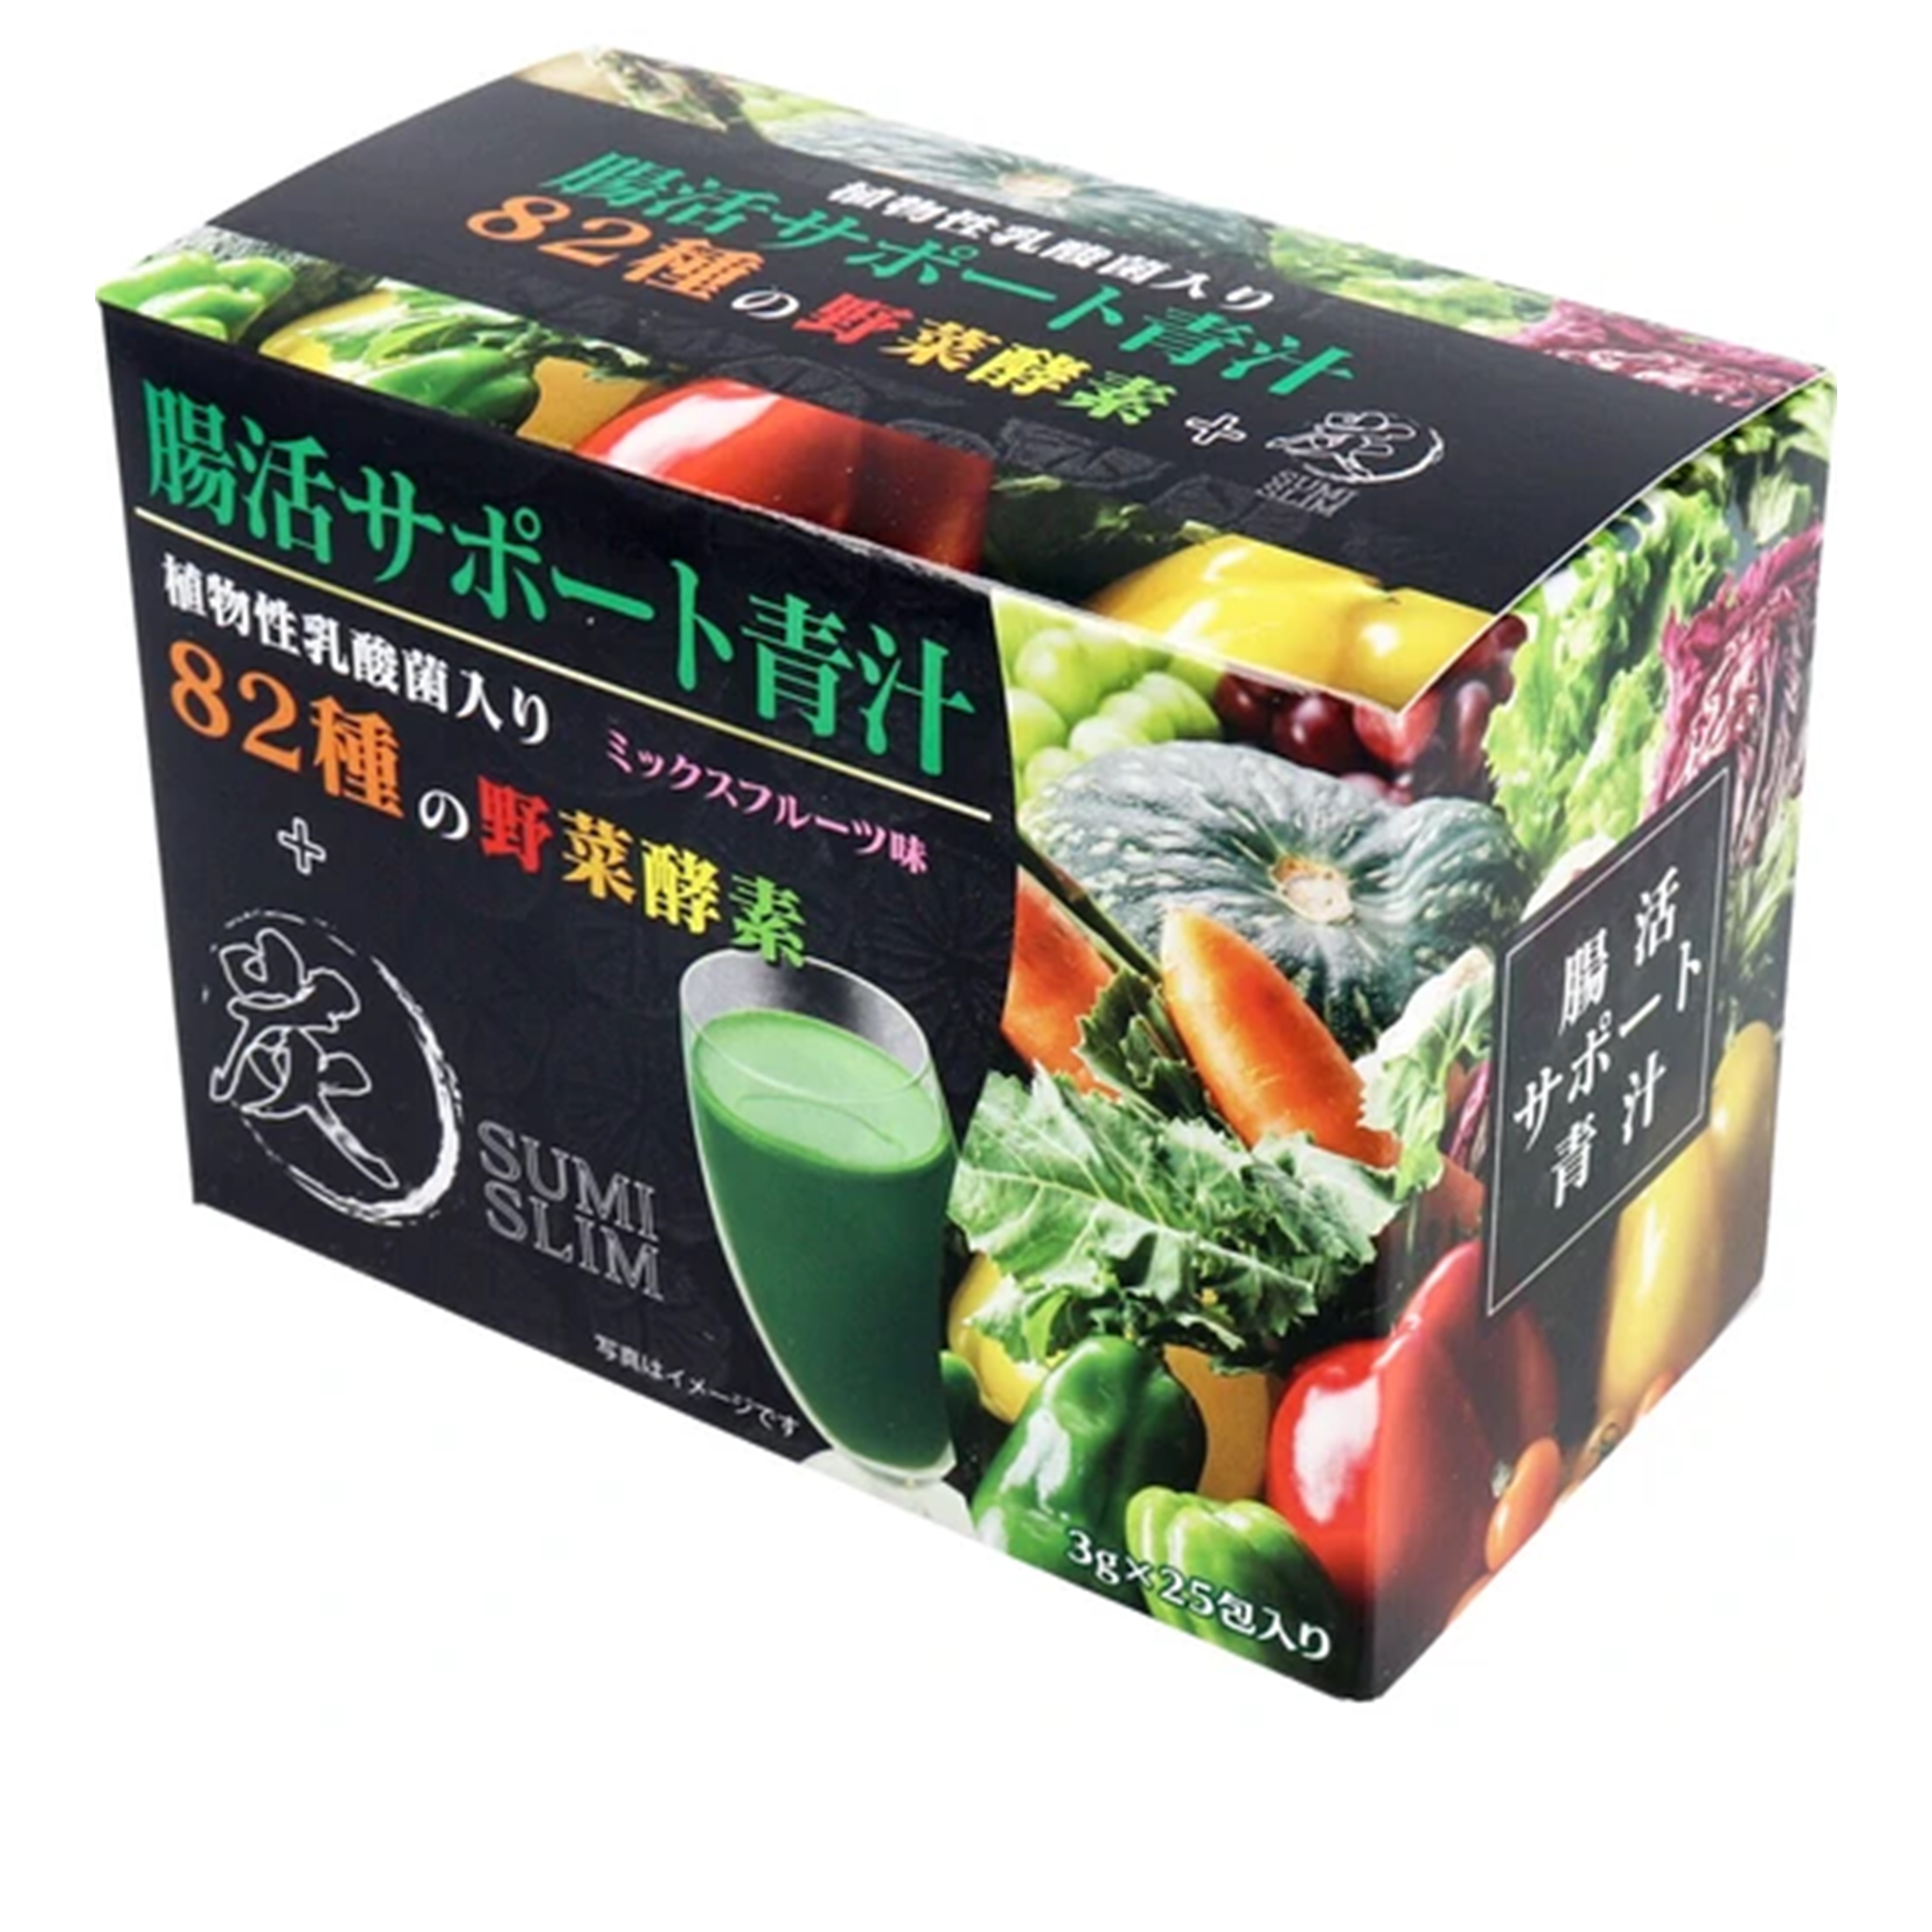 日本 HIKARI 含植物乳酸菌 82種植物酵素 + 木炭混合水果味 3g x 25包 青汁